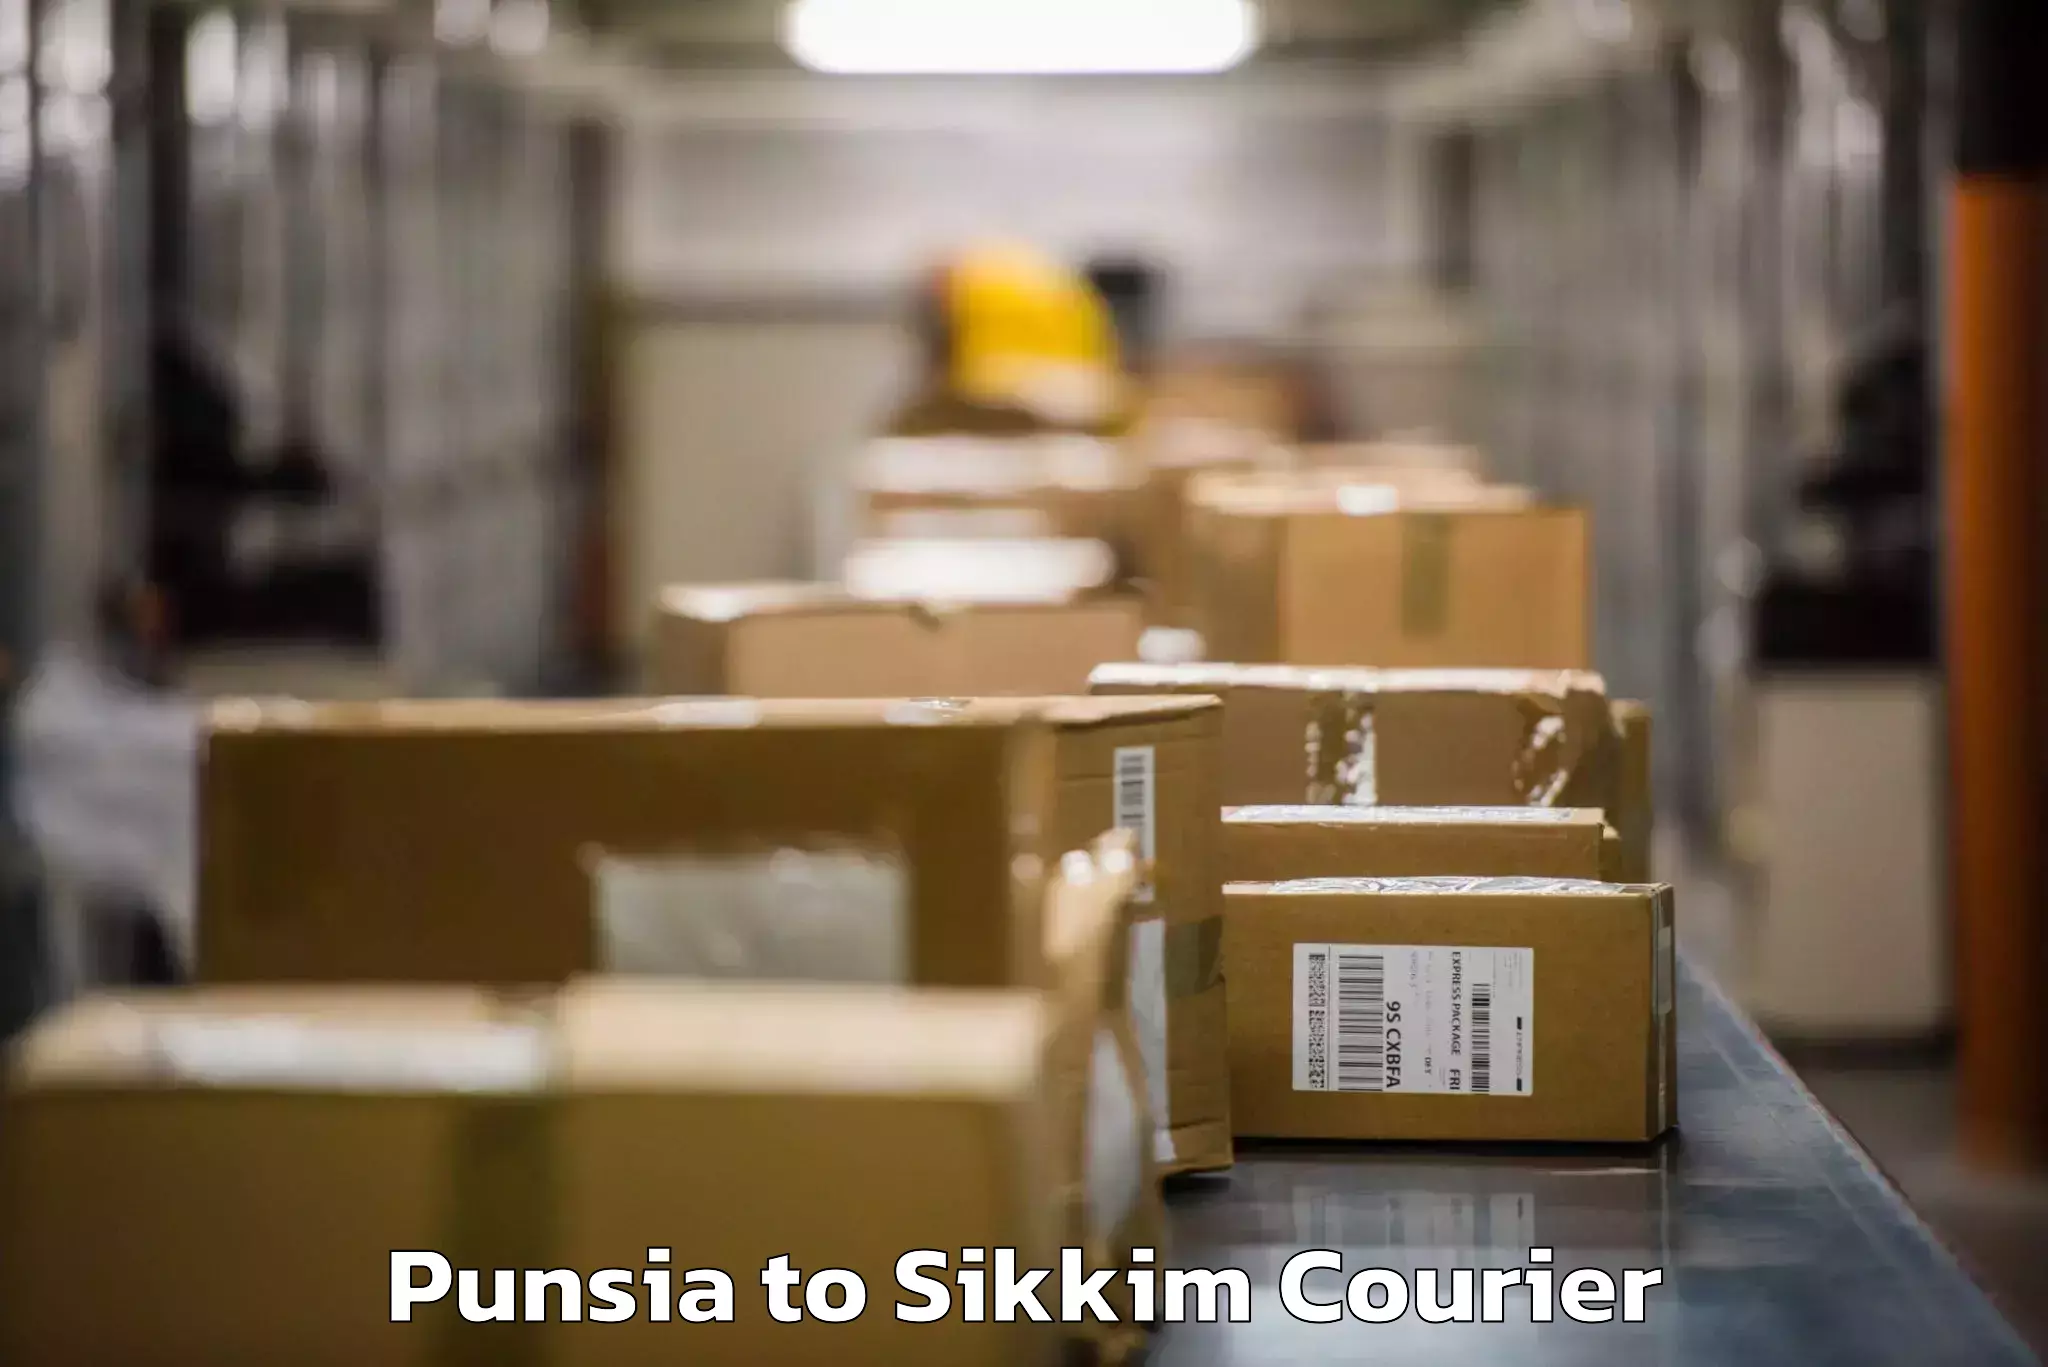 Door-to-door baggage service Punsia to Sikkim